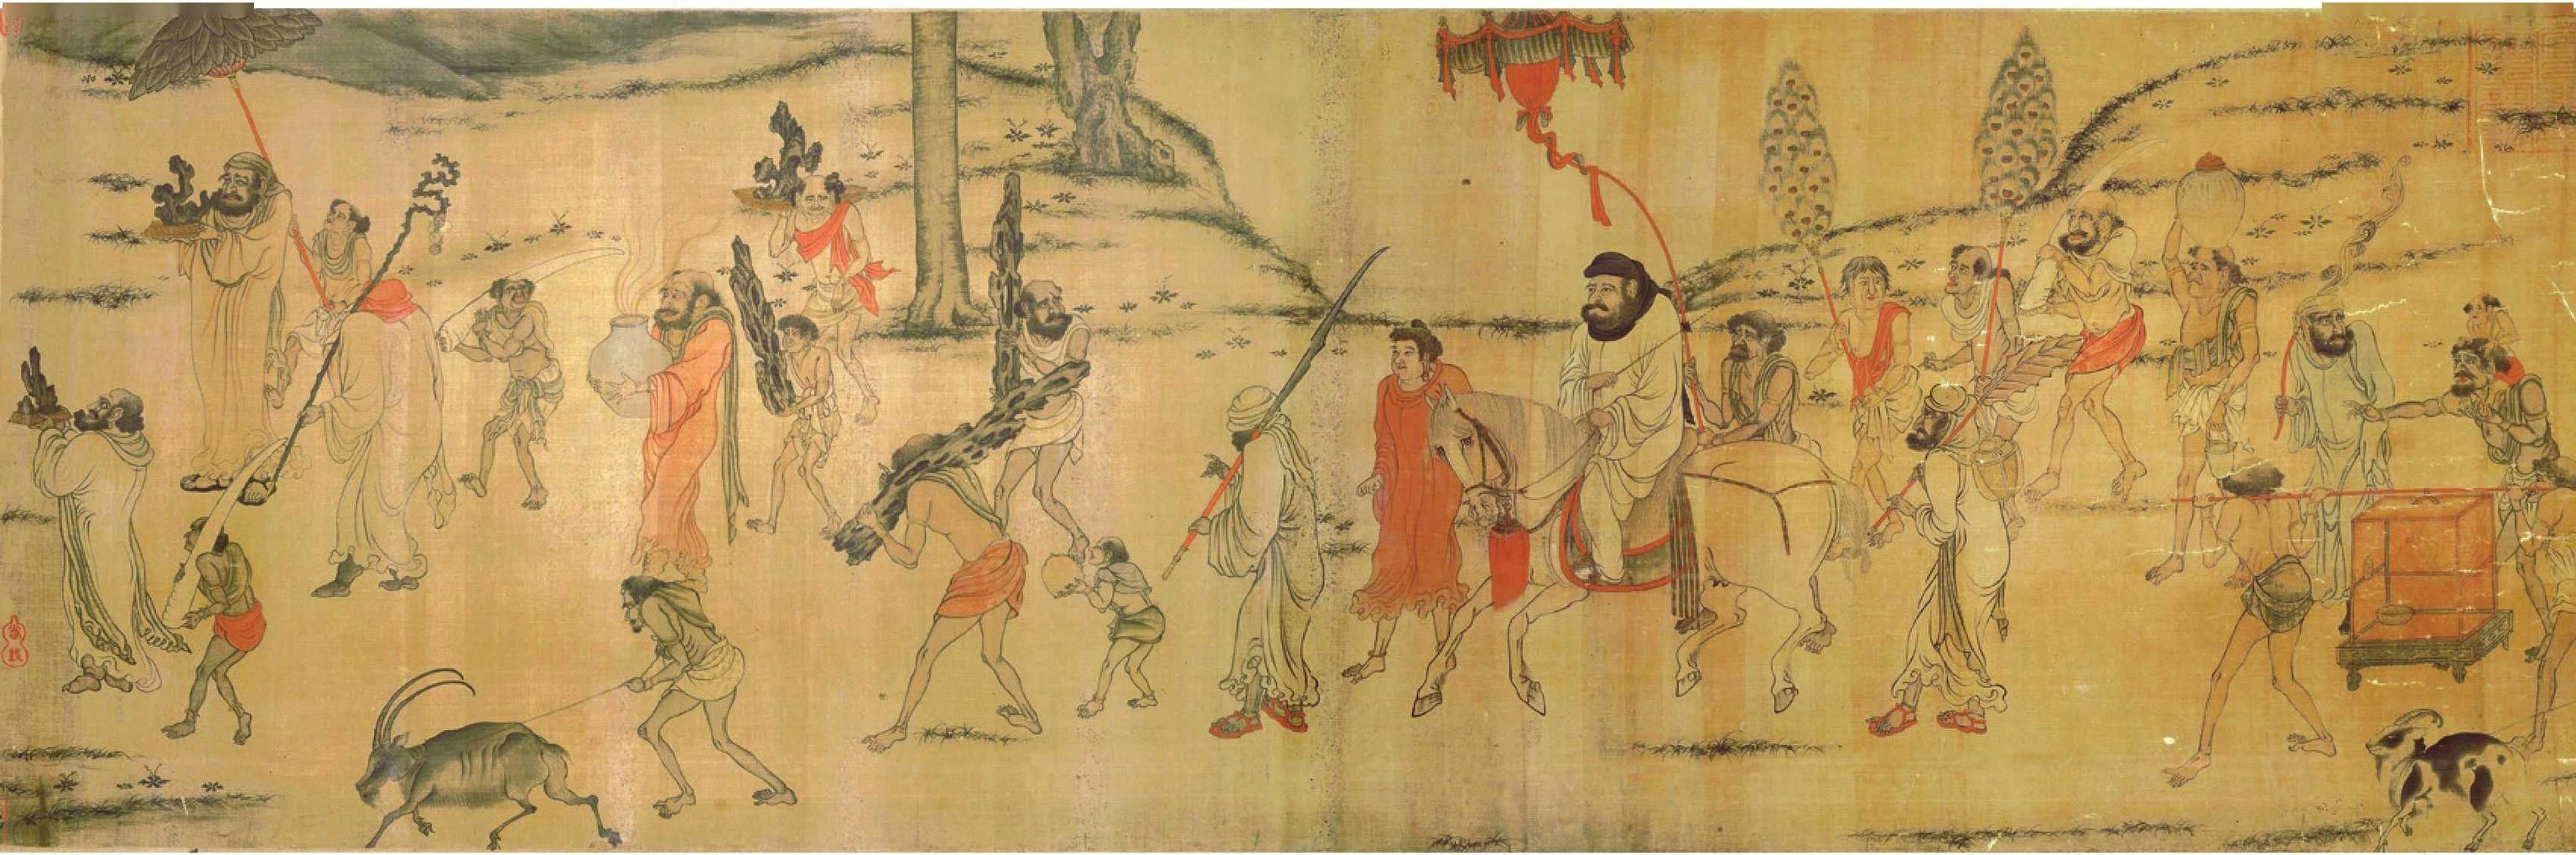 唐朝之绘画承六国之风君臣皆会画被称为国画的巅峰时期